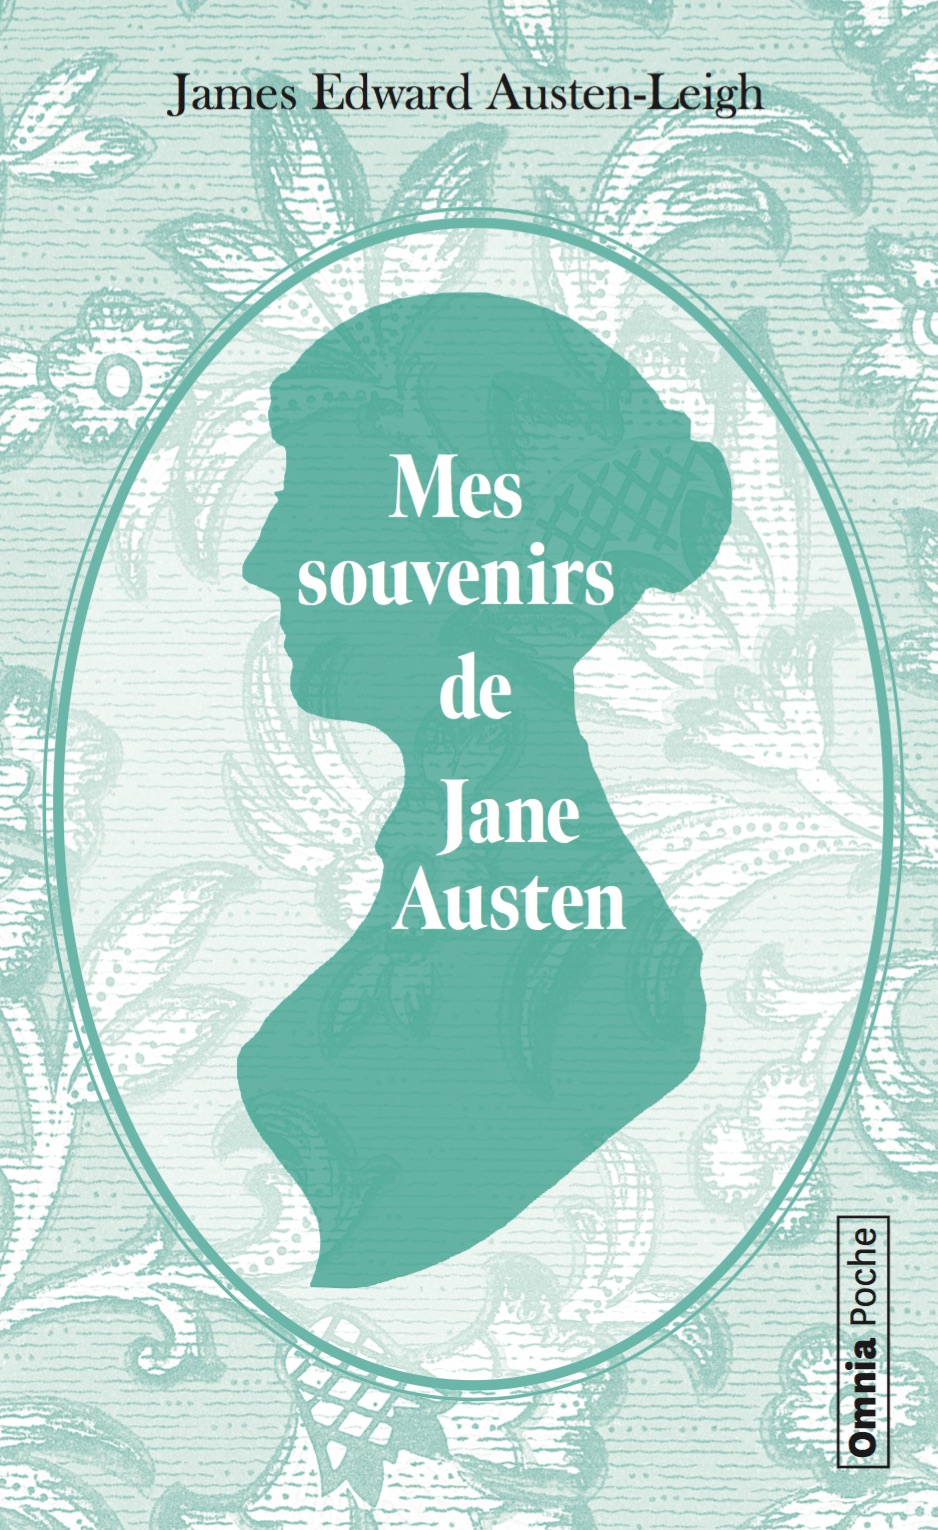 Couverture Mes souvenirs de Jane Austen - James Edward Austen-Leigh